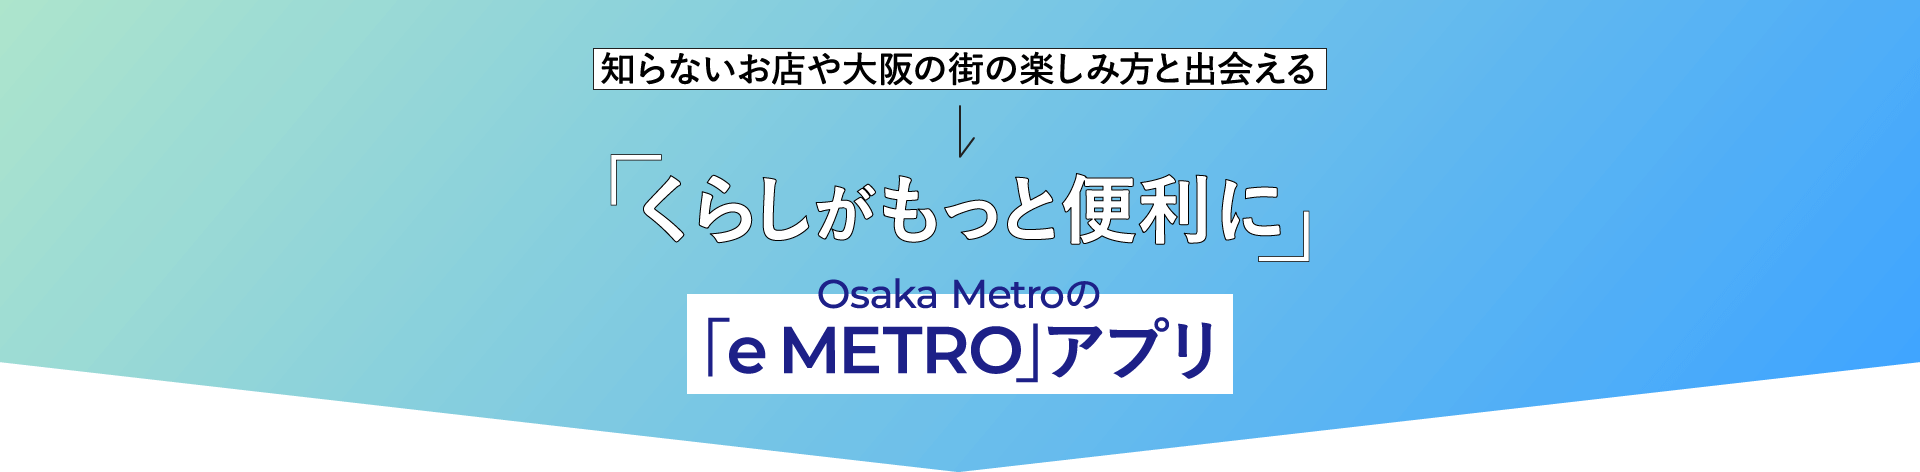 「くらしがもっと便利に」Osaka Metroの「e METRO」アプリ